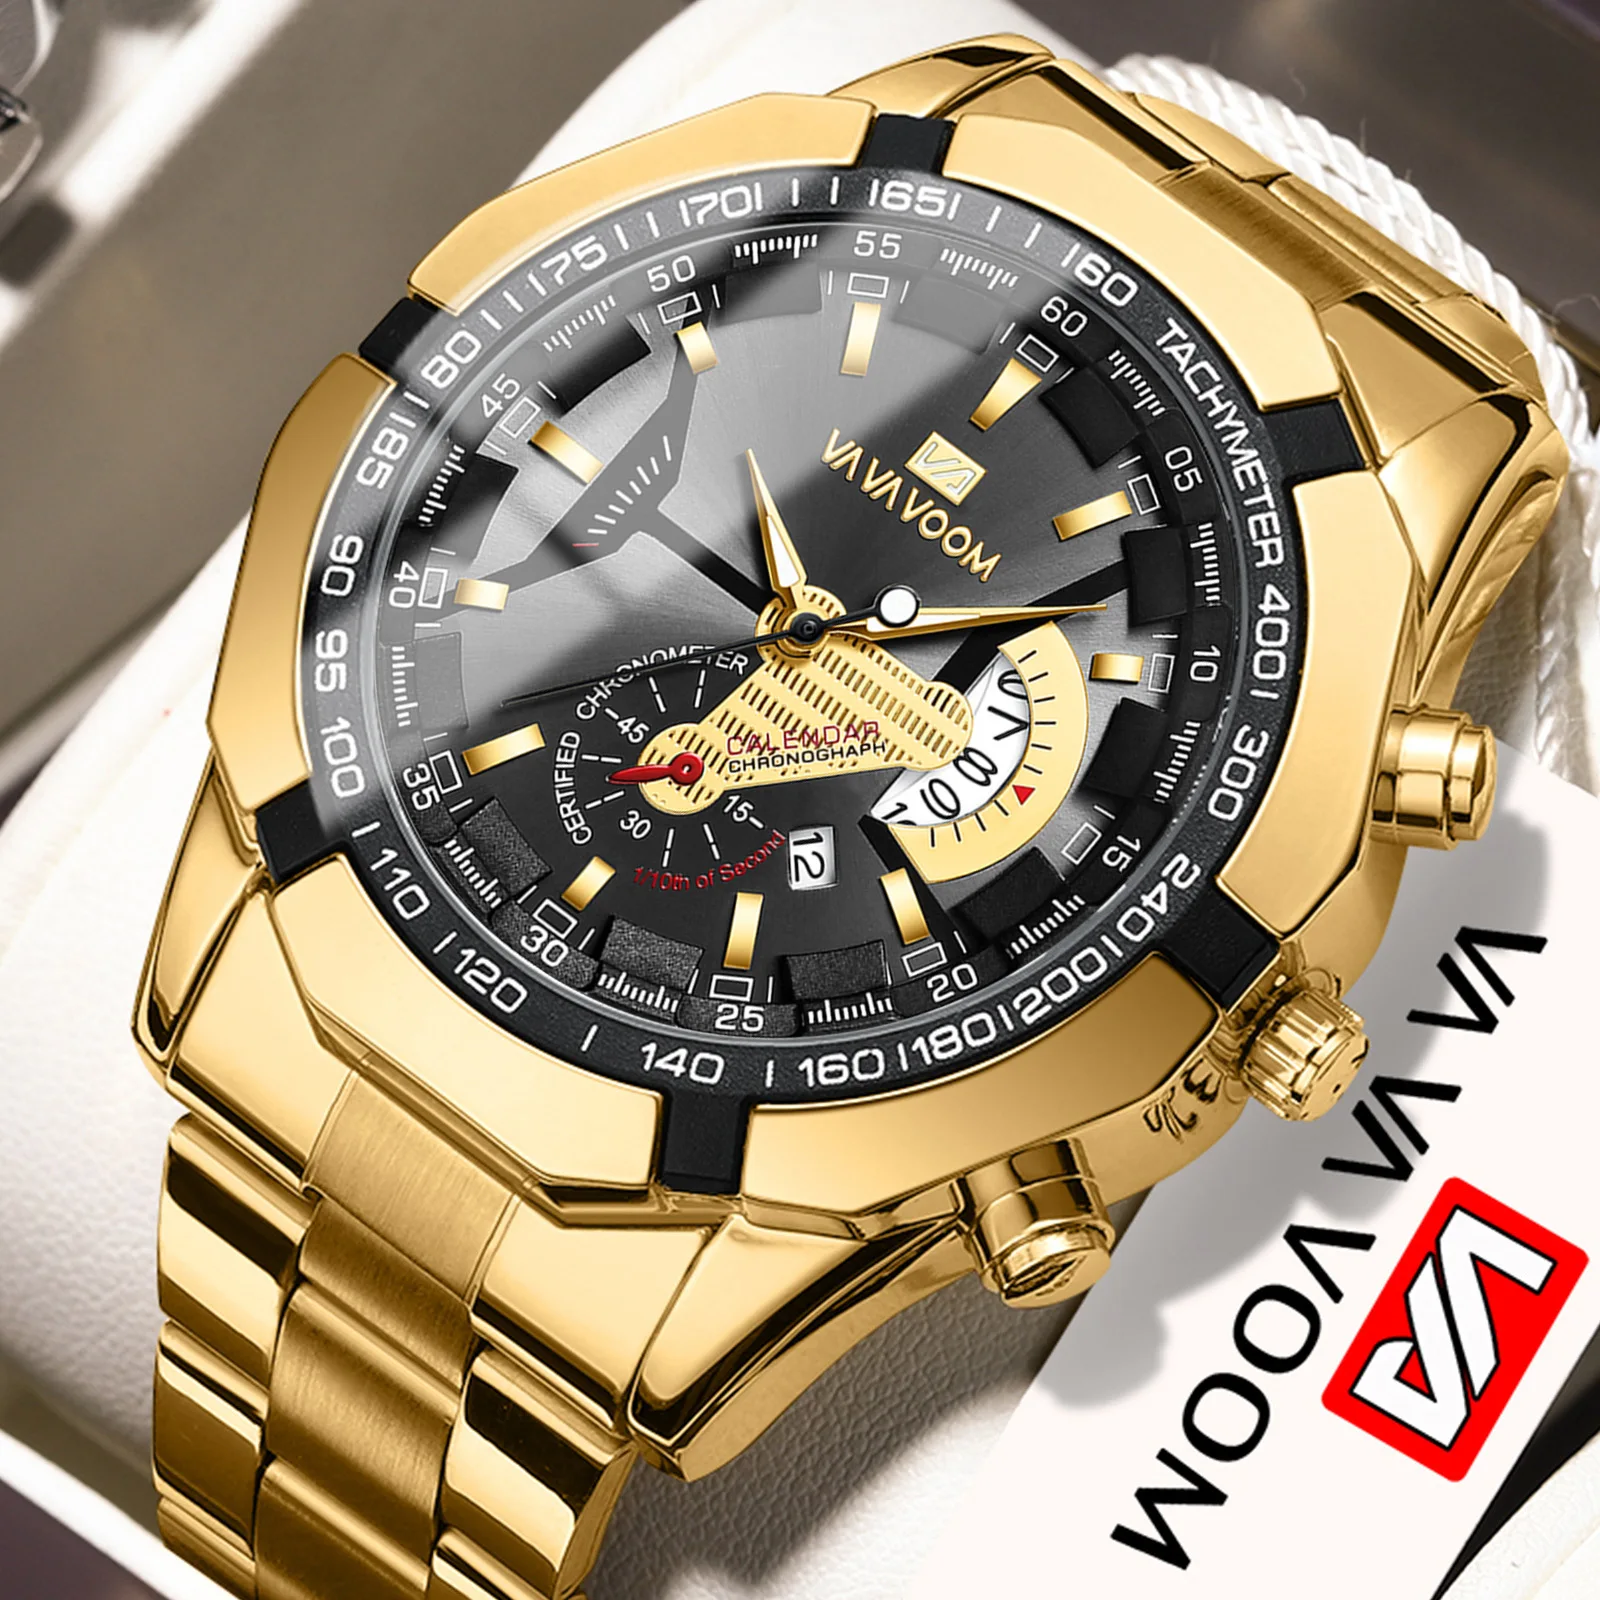 

Fashion Men Watch Black Stainless Steel Luxury Calendar Quartz Wrist Watch Mens Business Watches for Man Clock VA VA VOOM